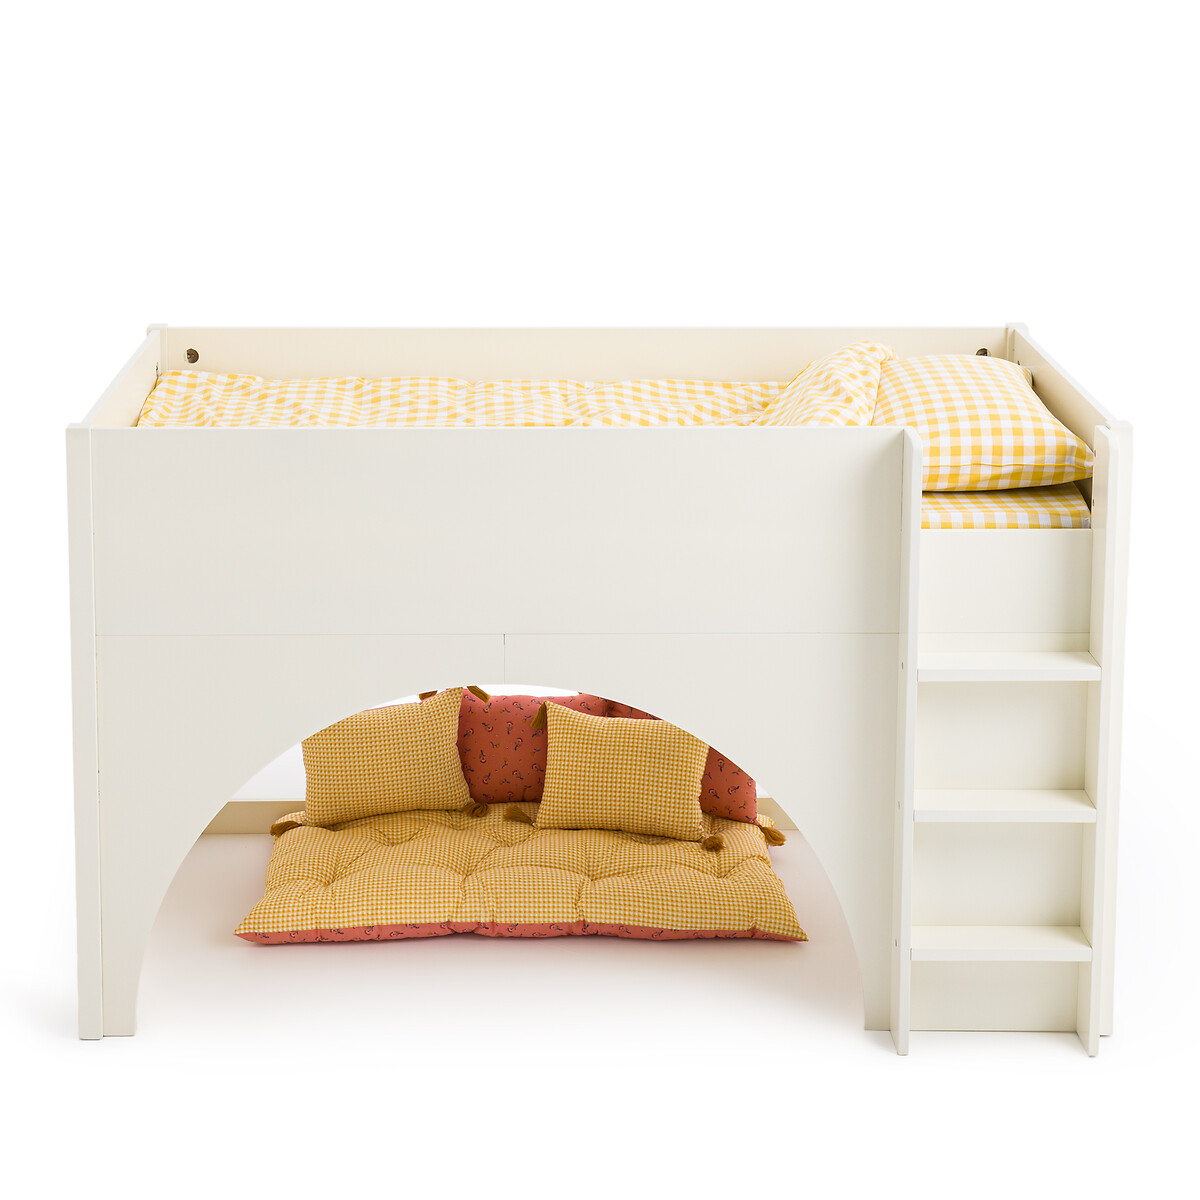 Σπίτι > Έπιπλα > Παιδικό Υπνοδωμάτιο > Παιδικά κρεβάτια > Κρεβάτια-κουκέτες Παιδικό κρεβάτι μεσαίου ύψους